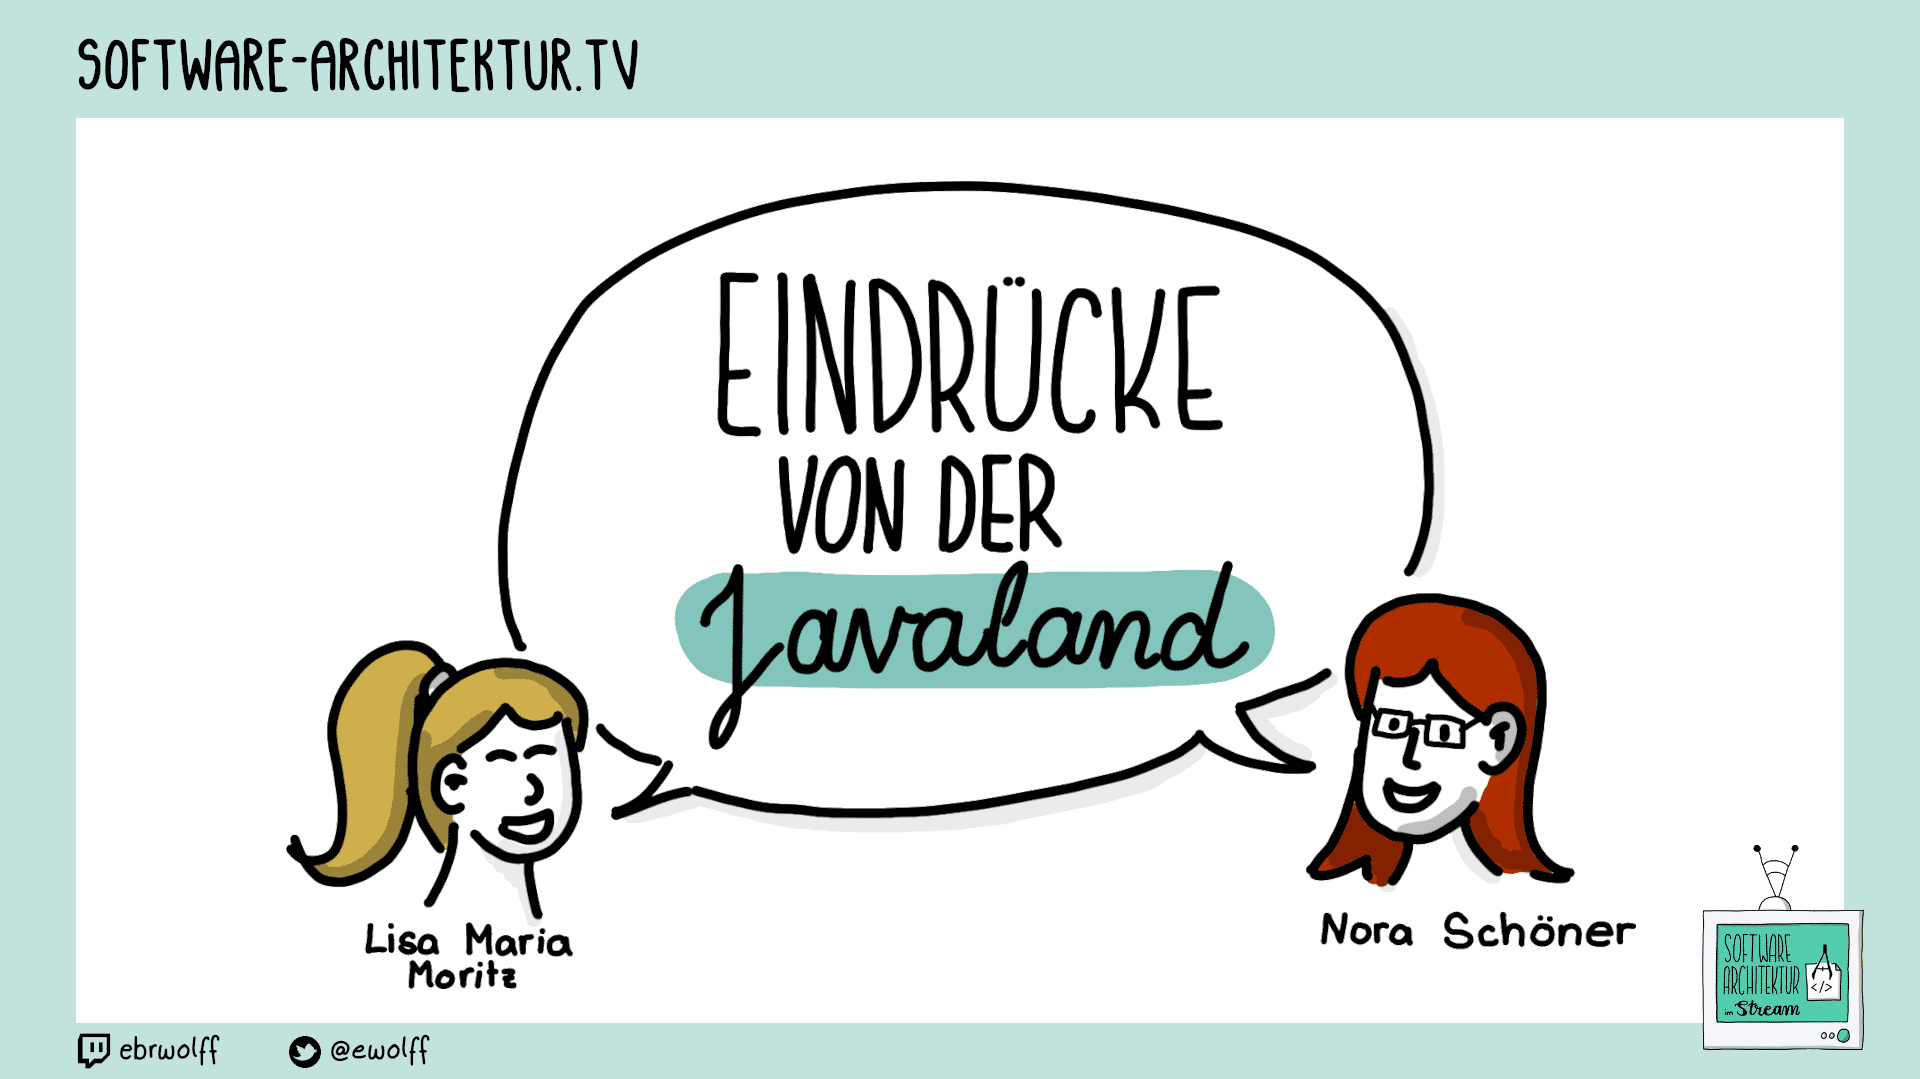 SATOUR-TV-Podcast: "JavaLand-Eindrücke mit Nora Schöner und Lisa Moritz"